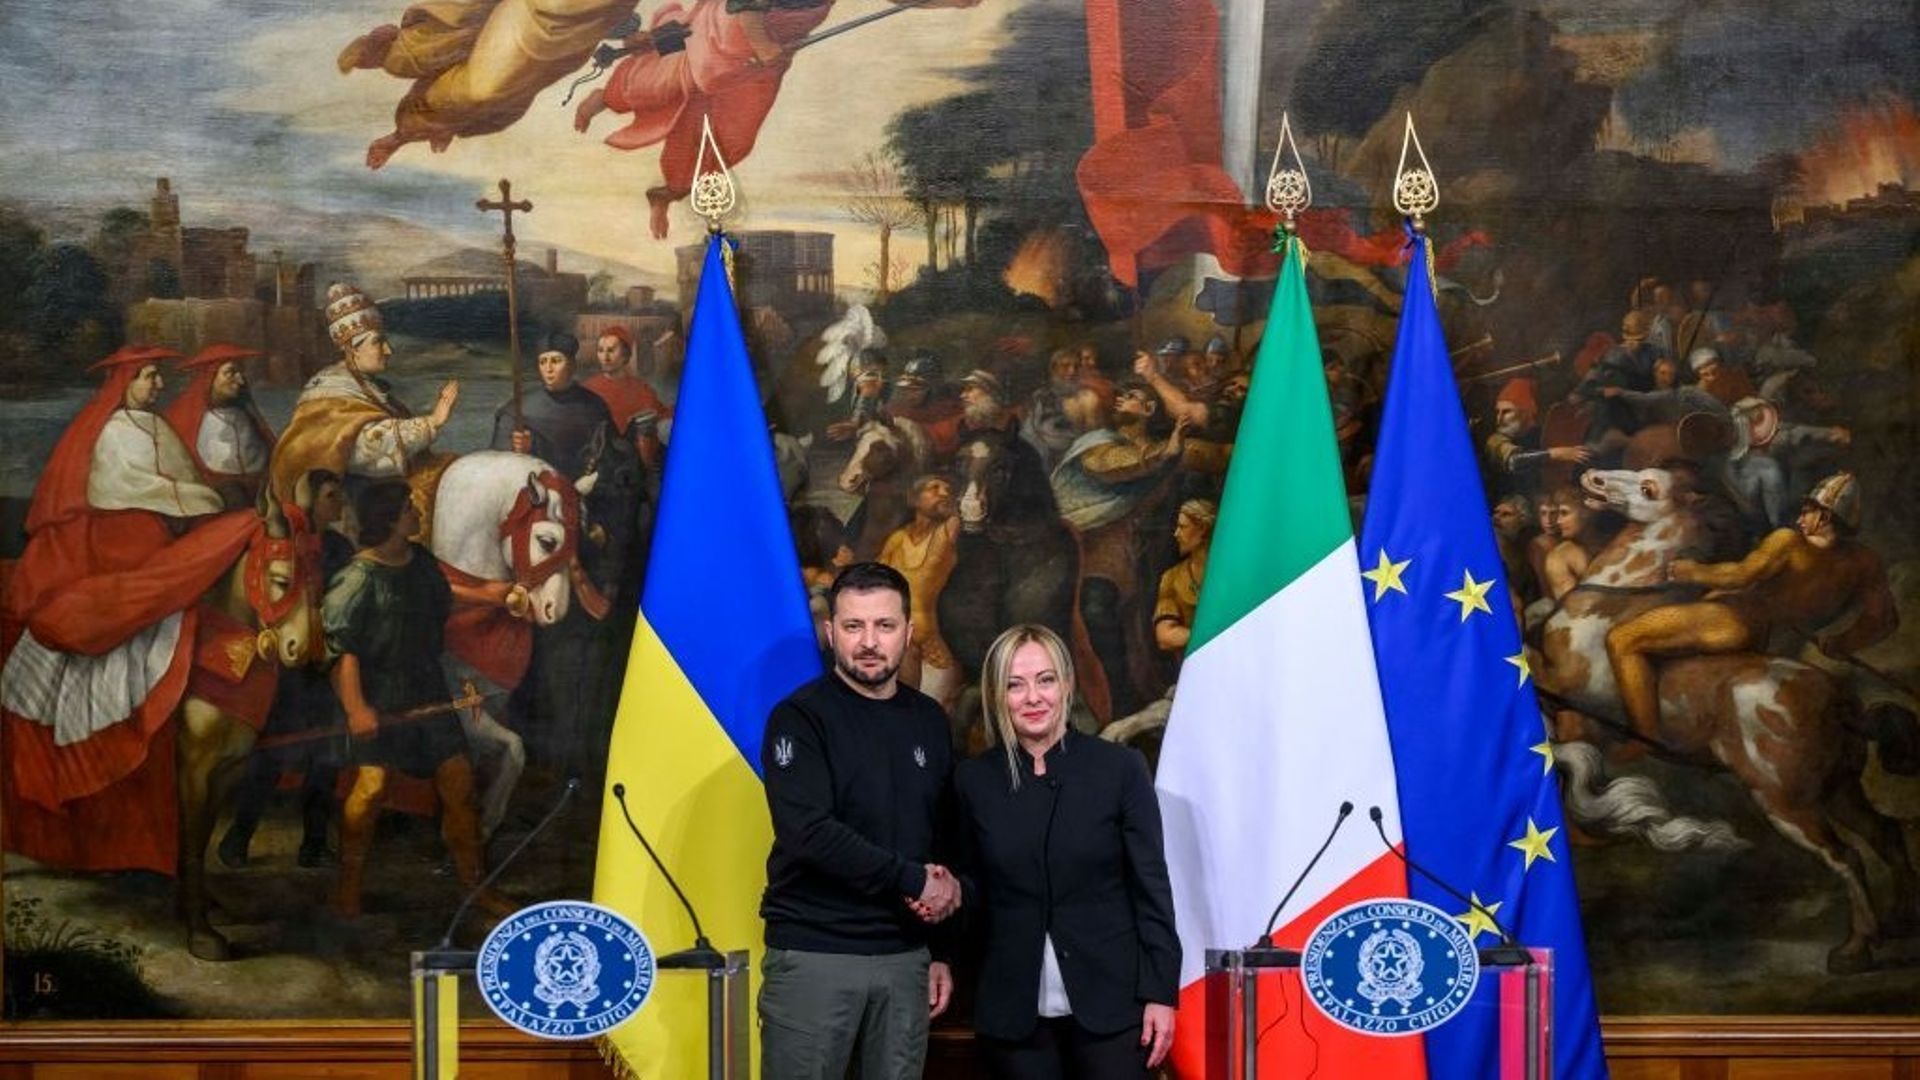 Le président ukrainien Volodymyr Zelensky effectue une visite d'État en Italie.